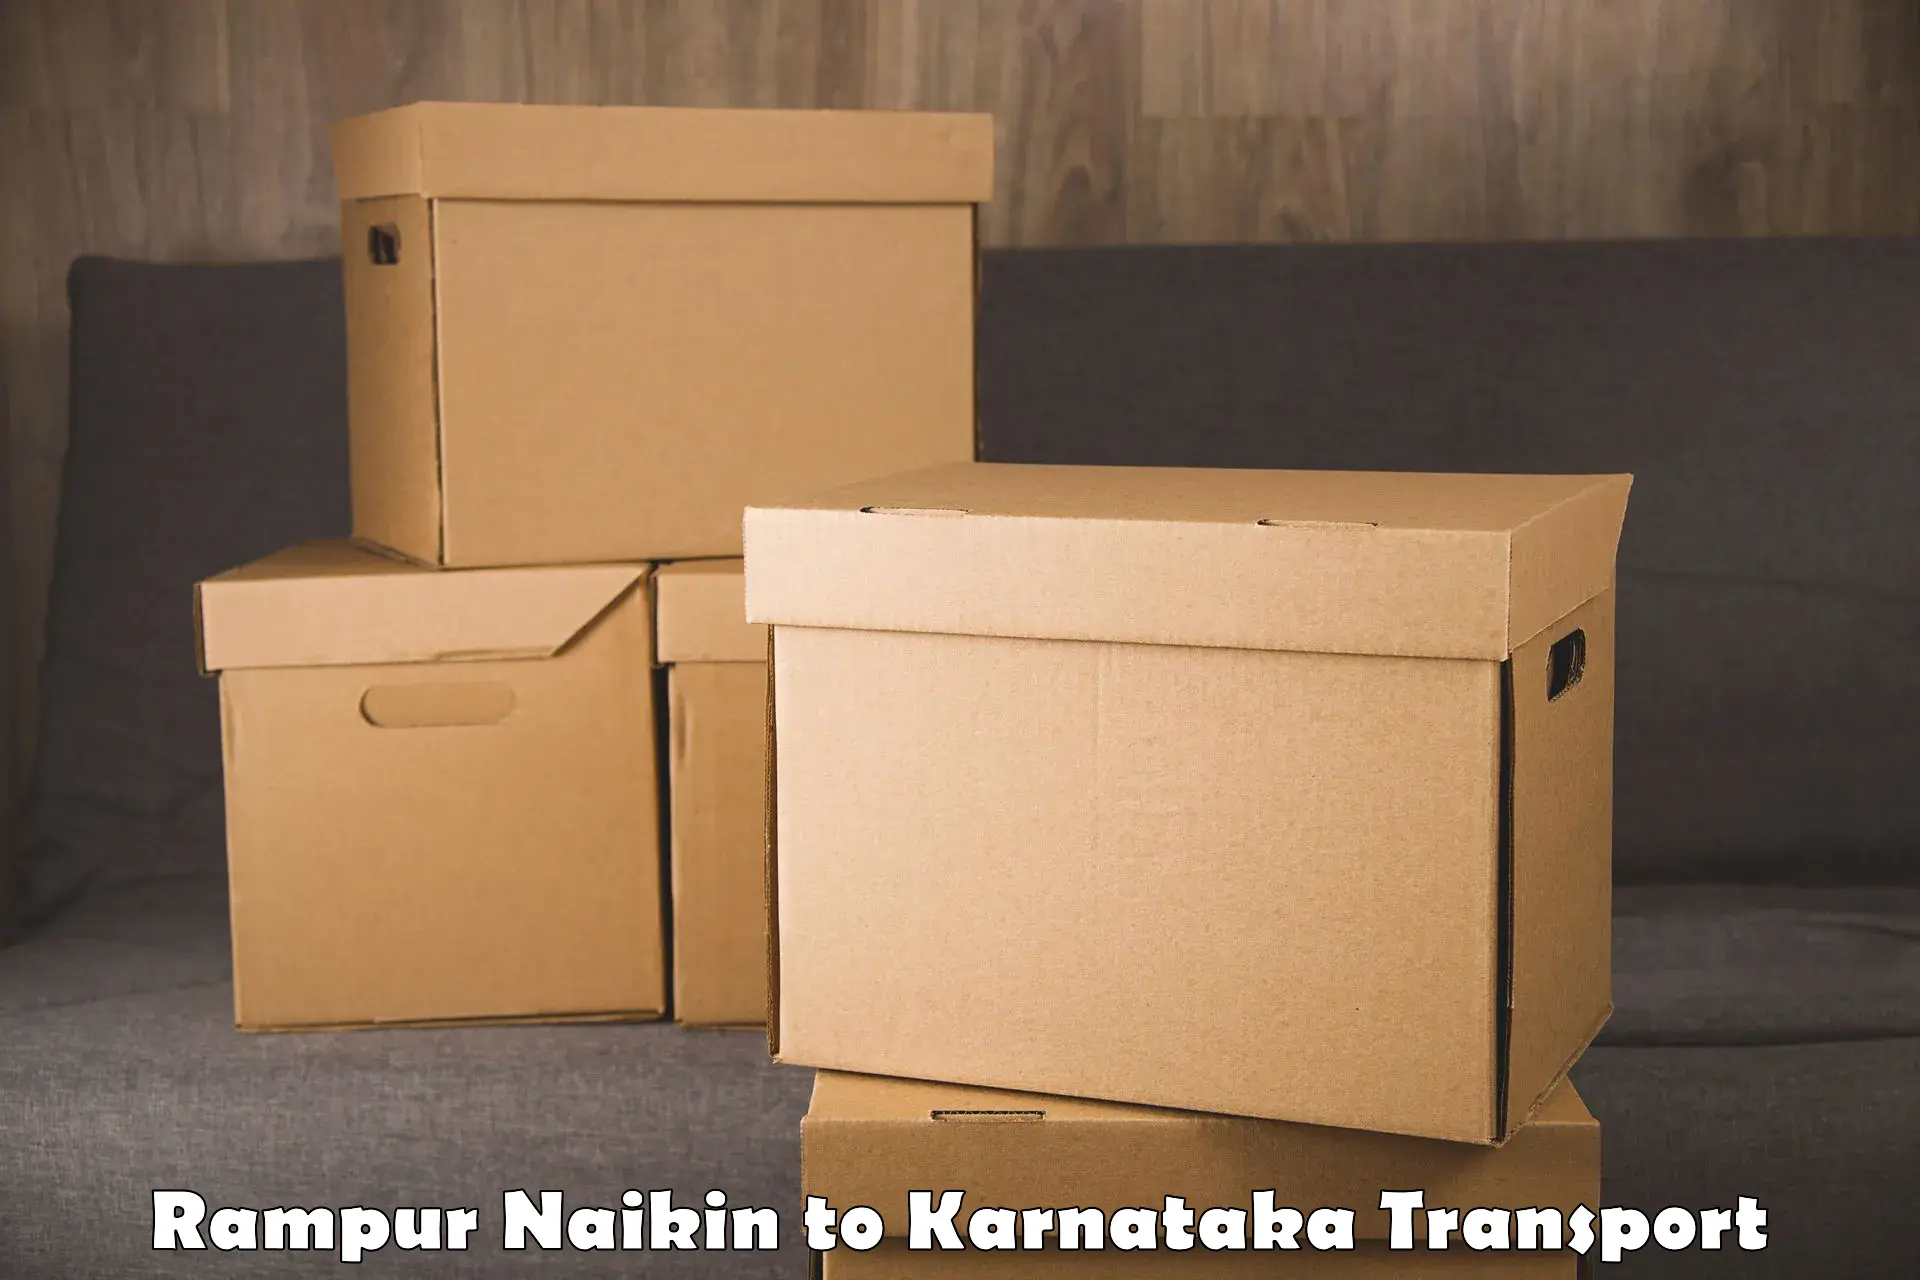 Nearby transport service Rampur Naikin to Shikaripur